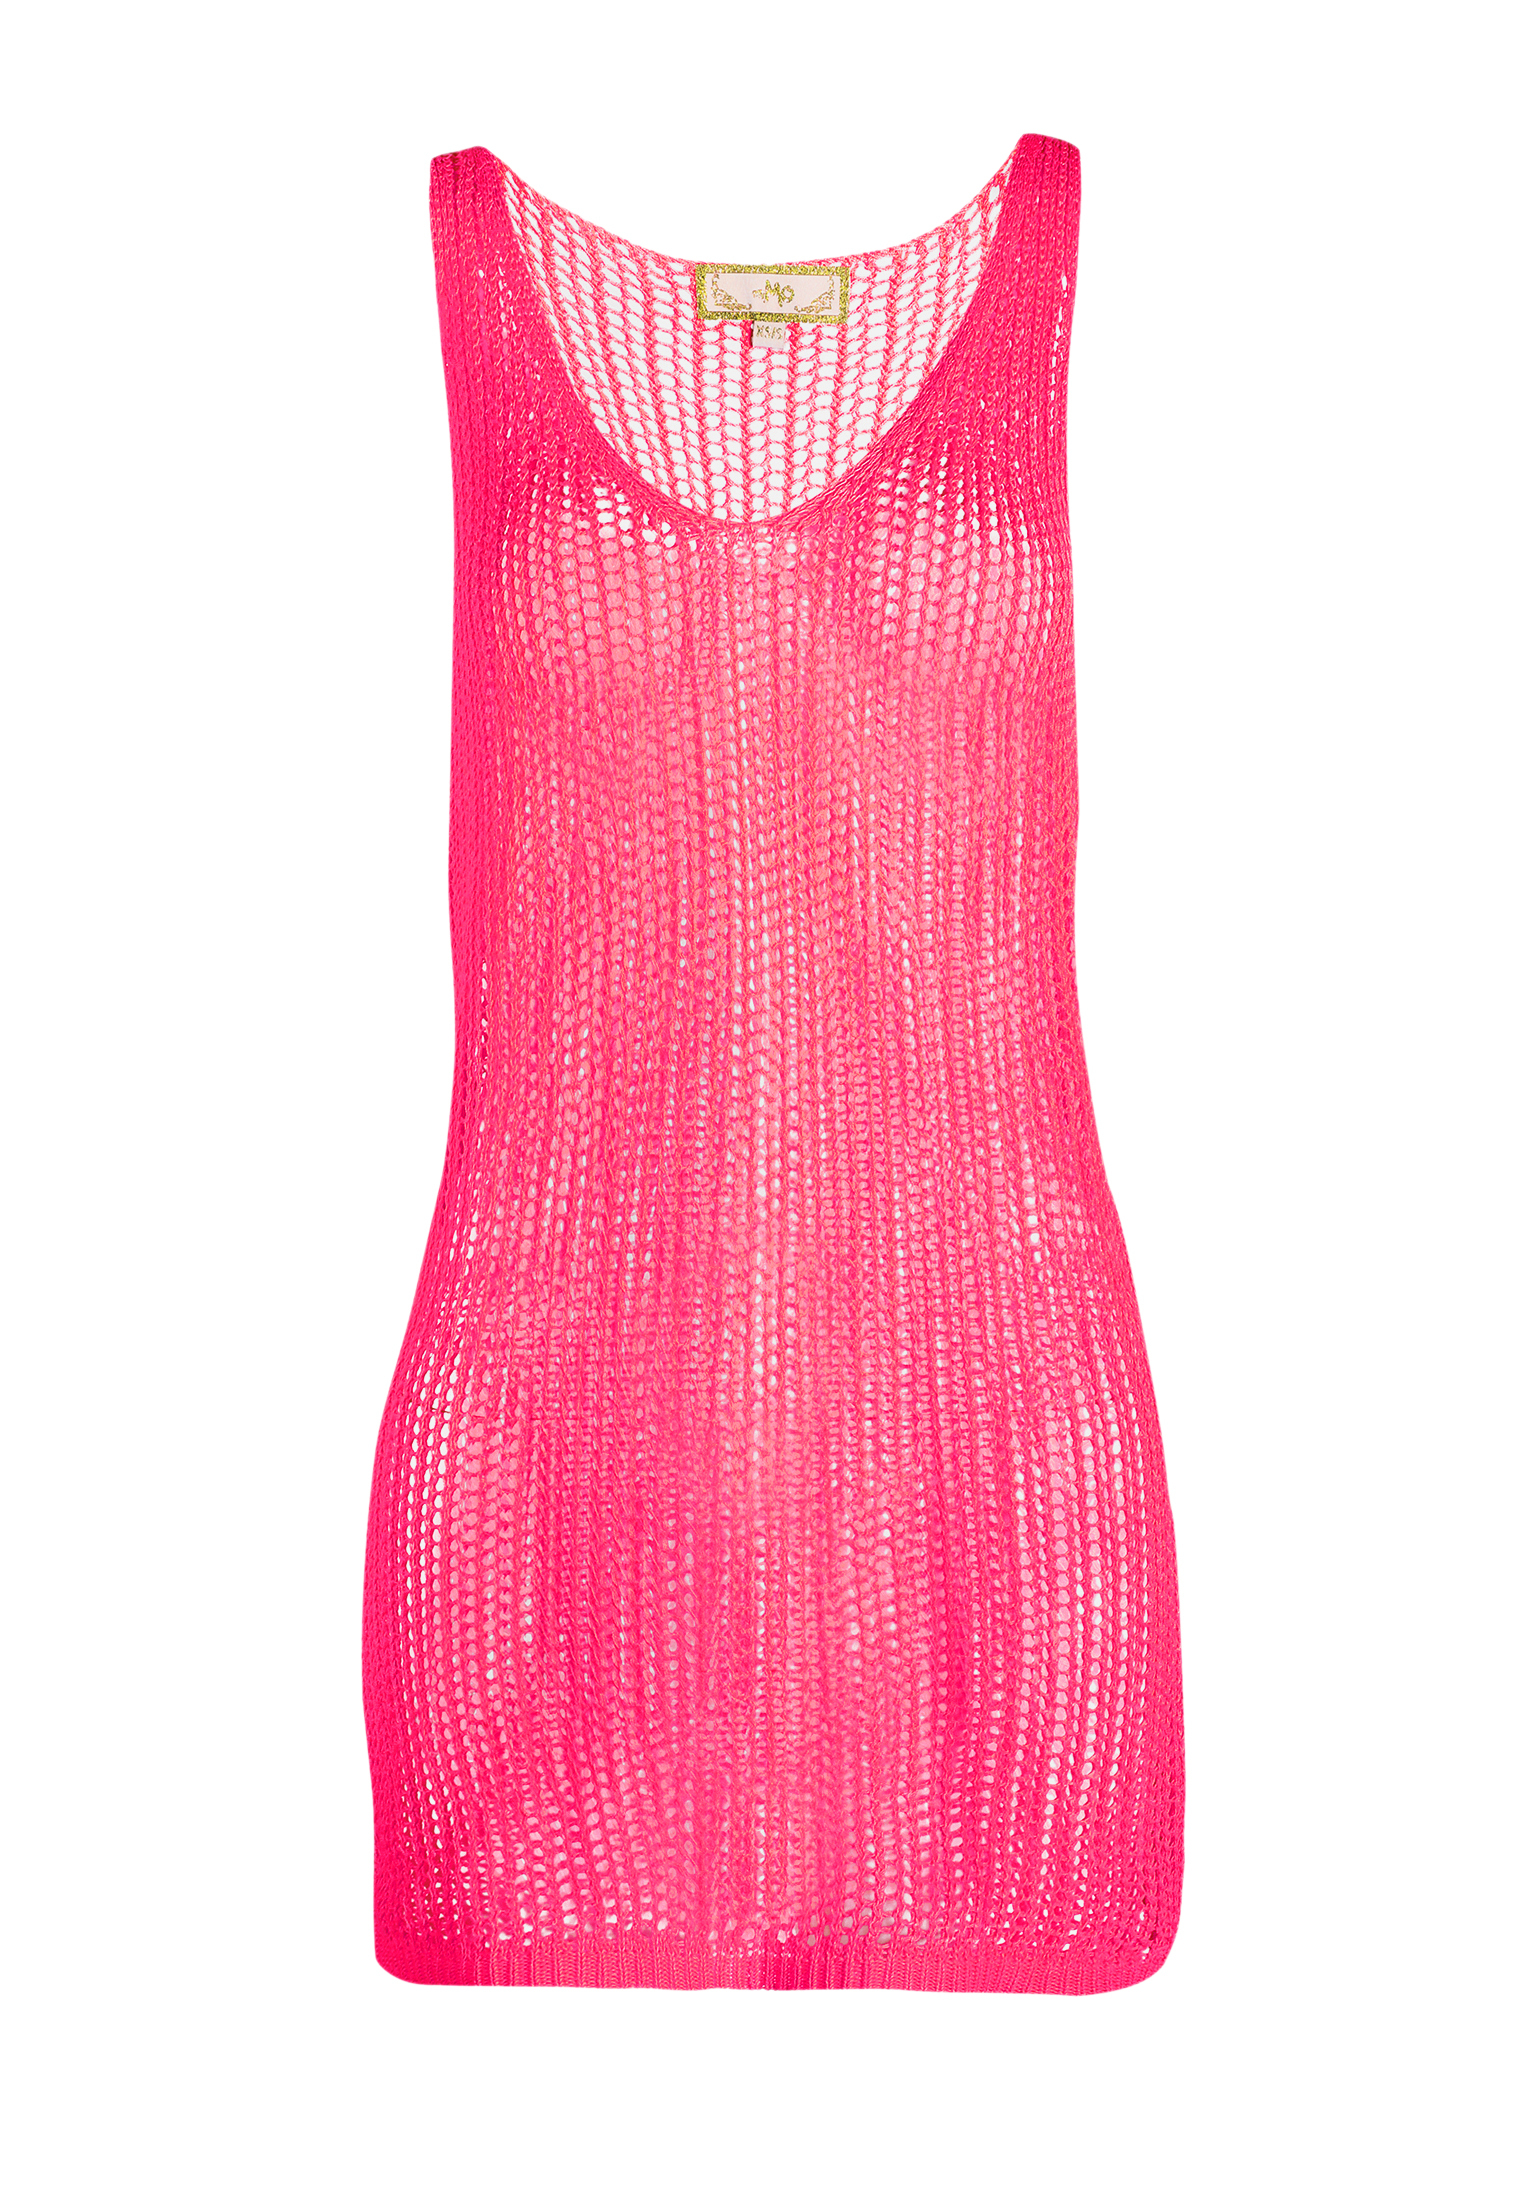 Odzież Kobiety MYMO Sukienka plażowa w kolorze Neonowy Różm 